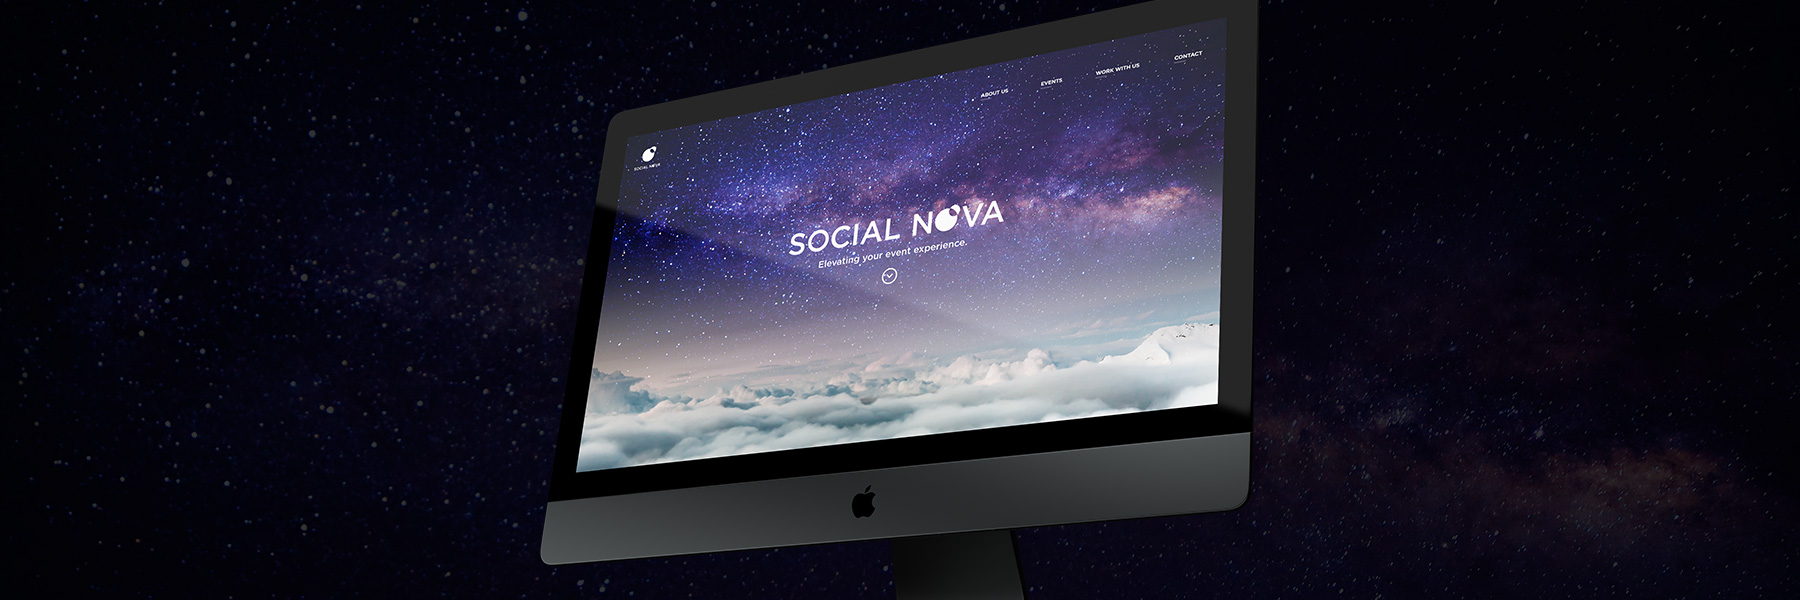 Social Nova Events